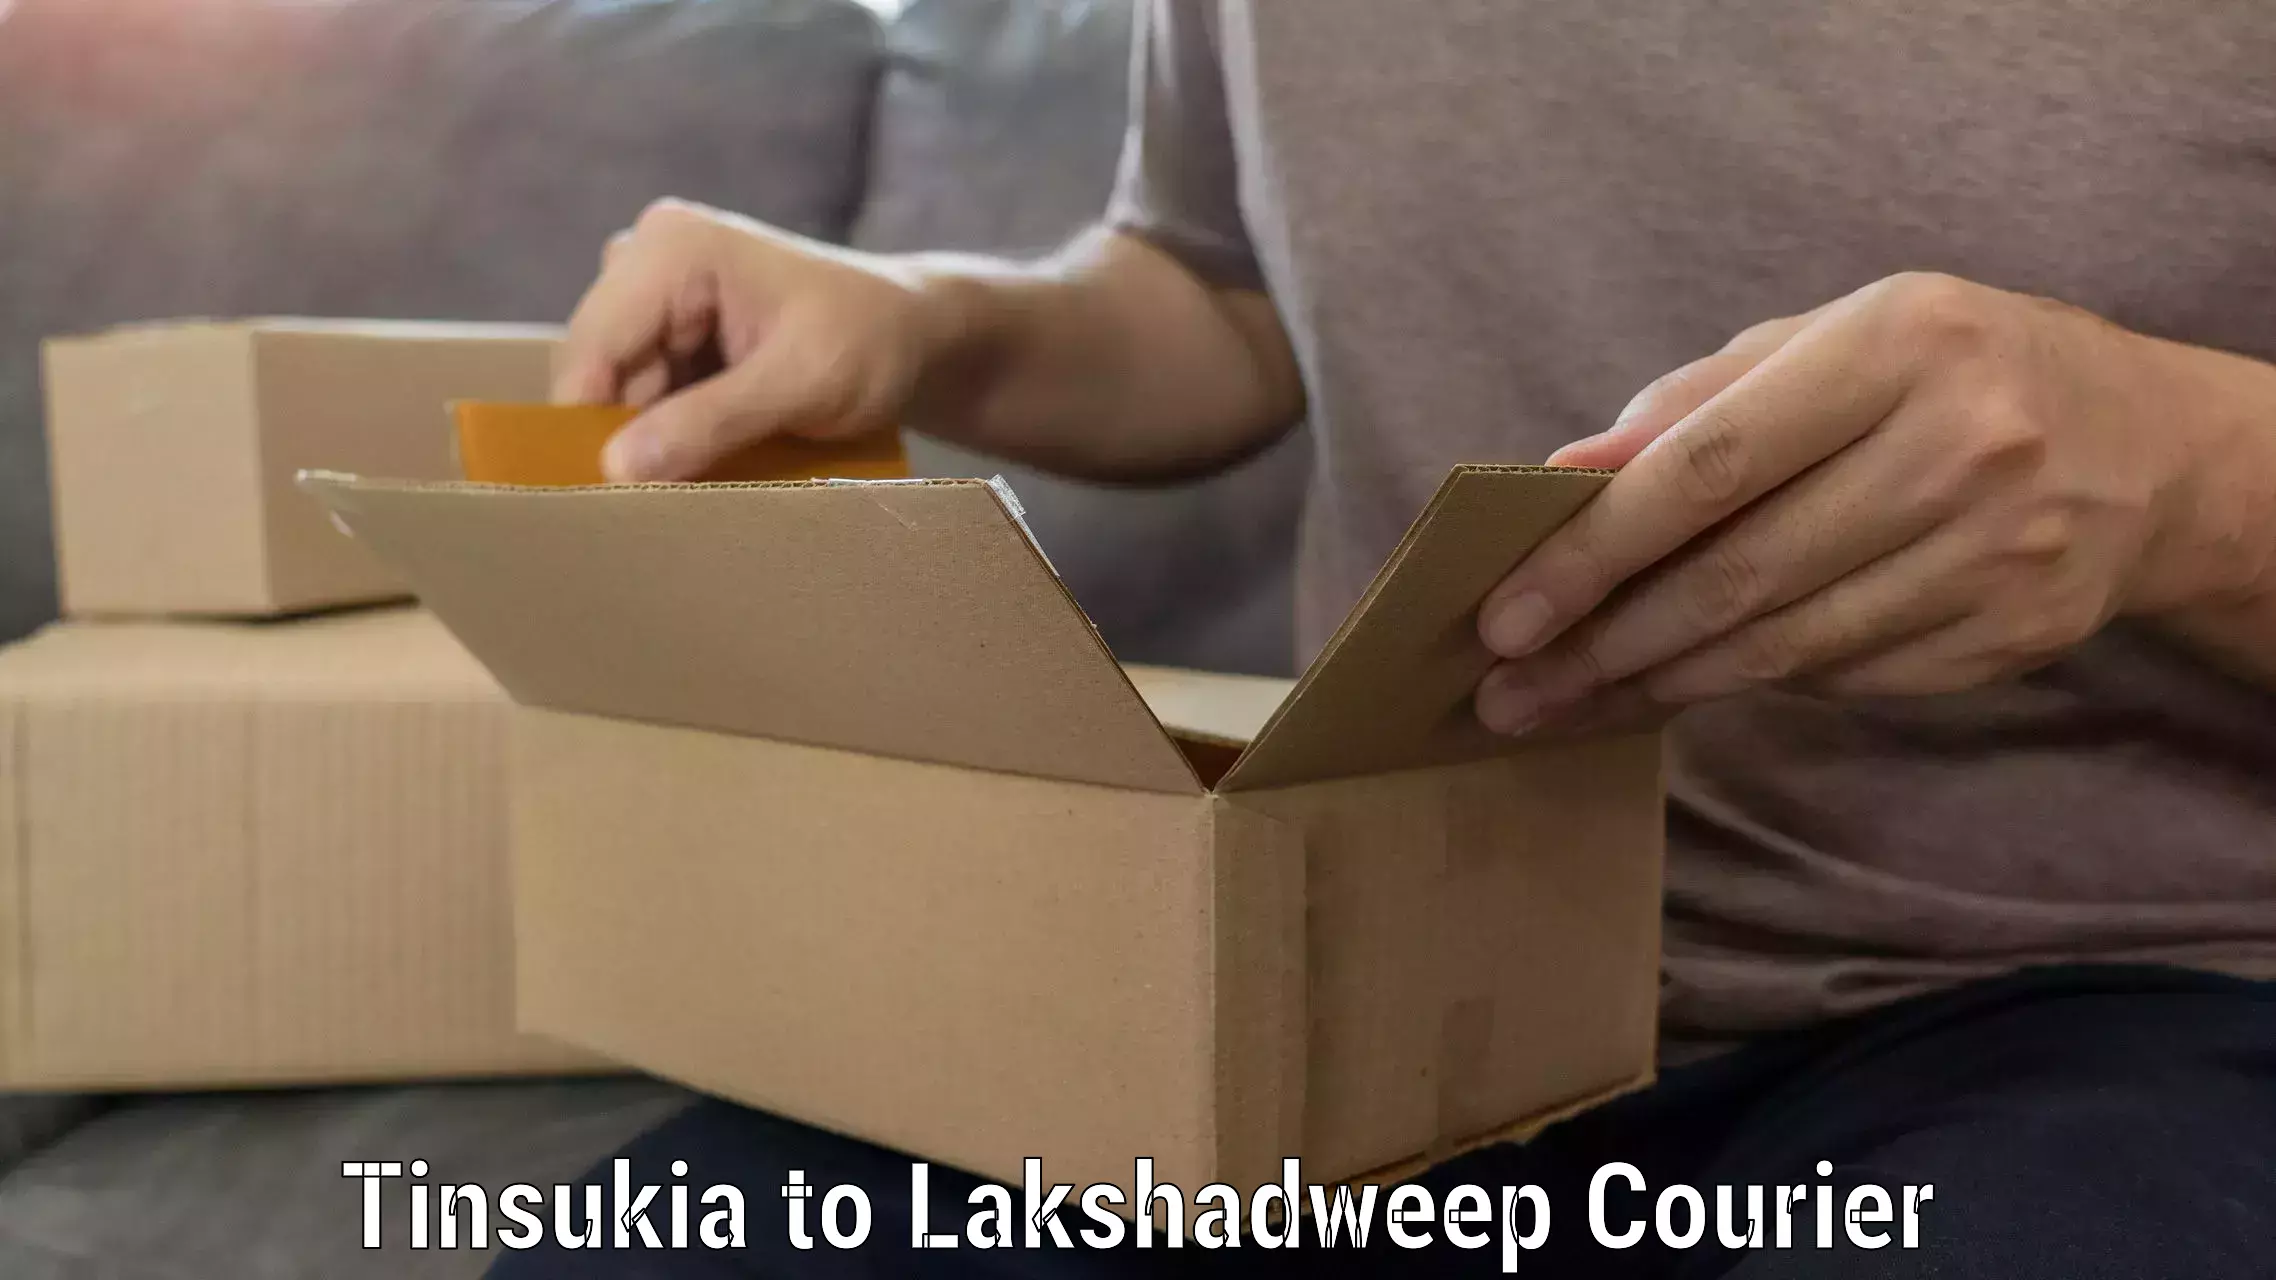 Furniture moving assistance Tinsukia to Lakshadweep